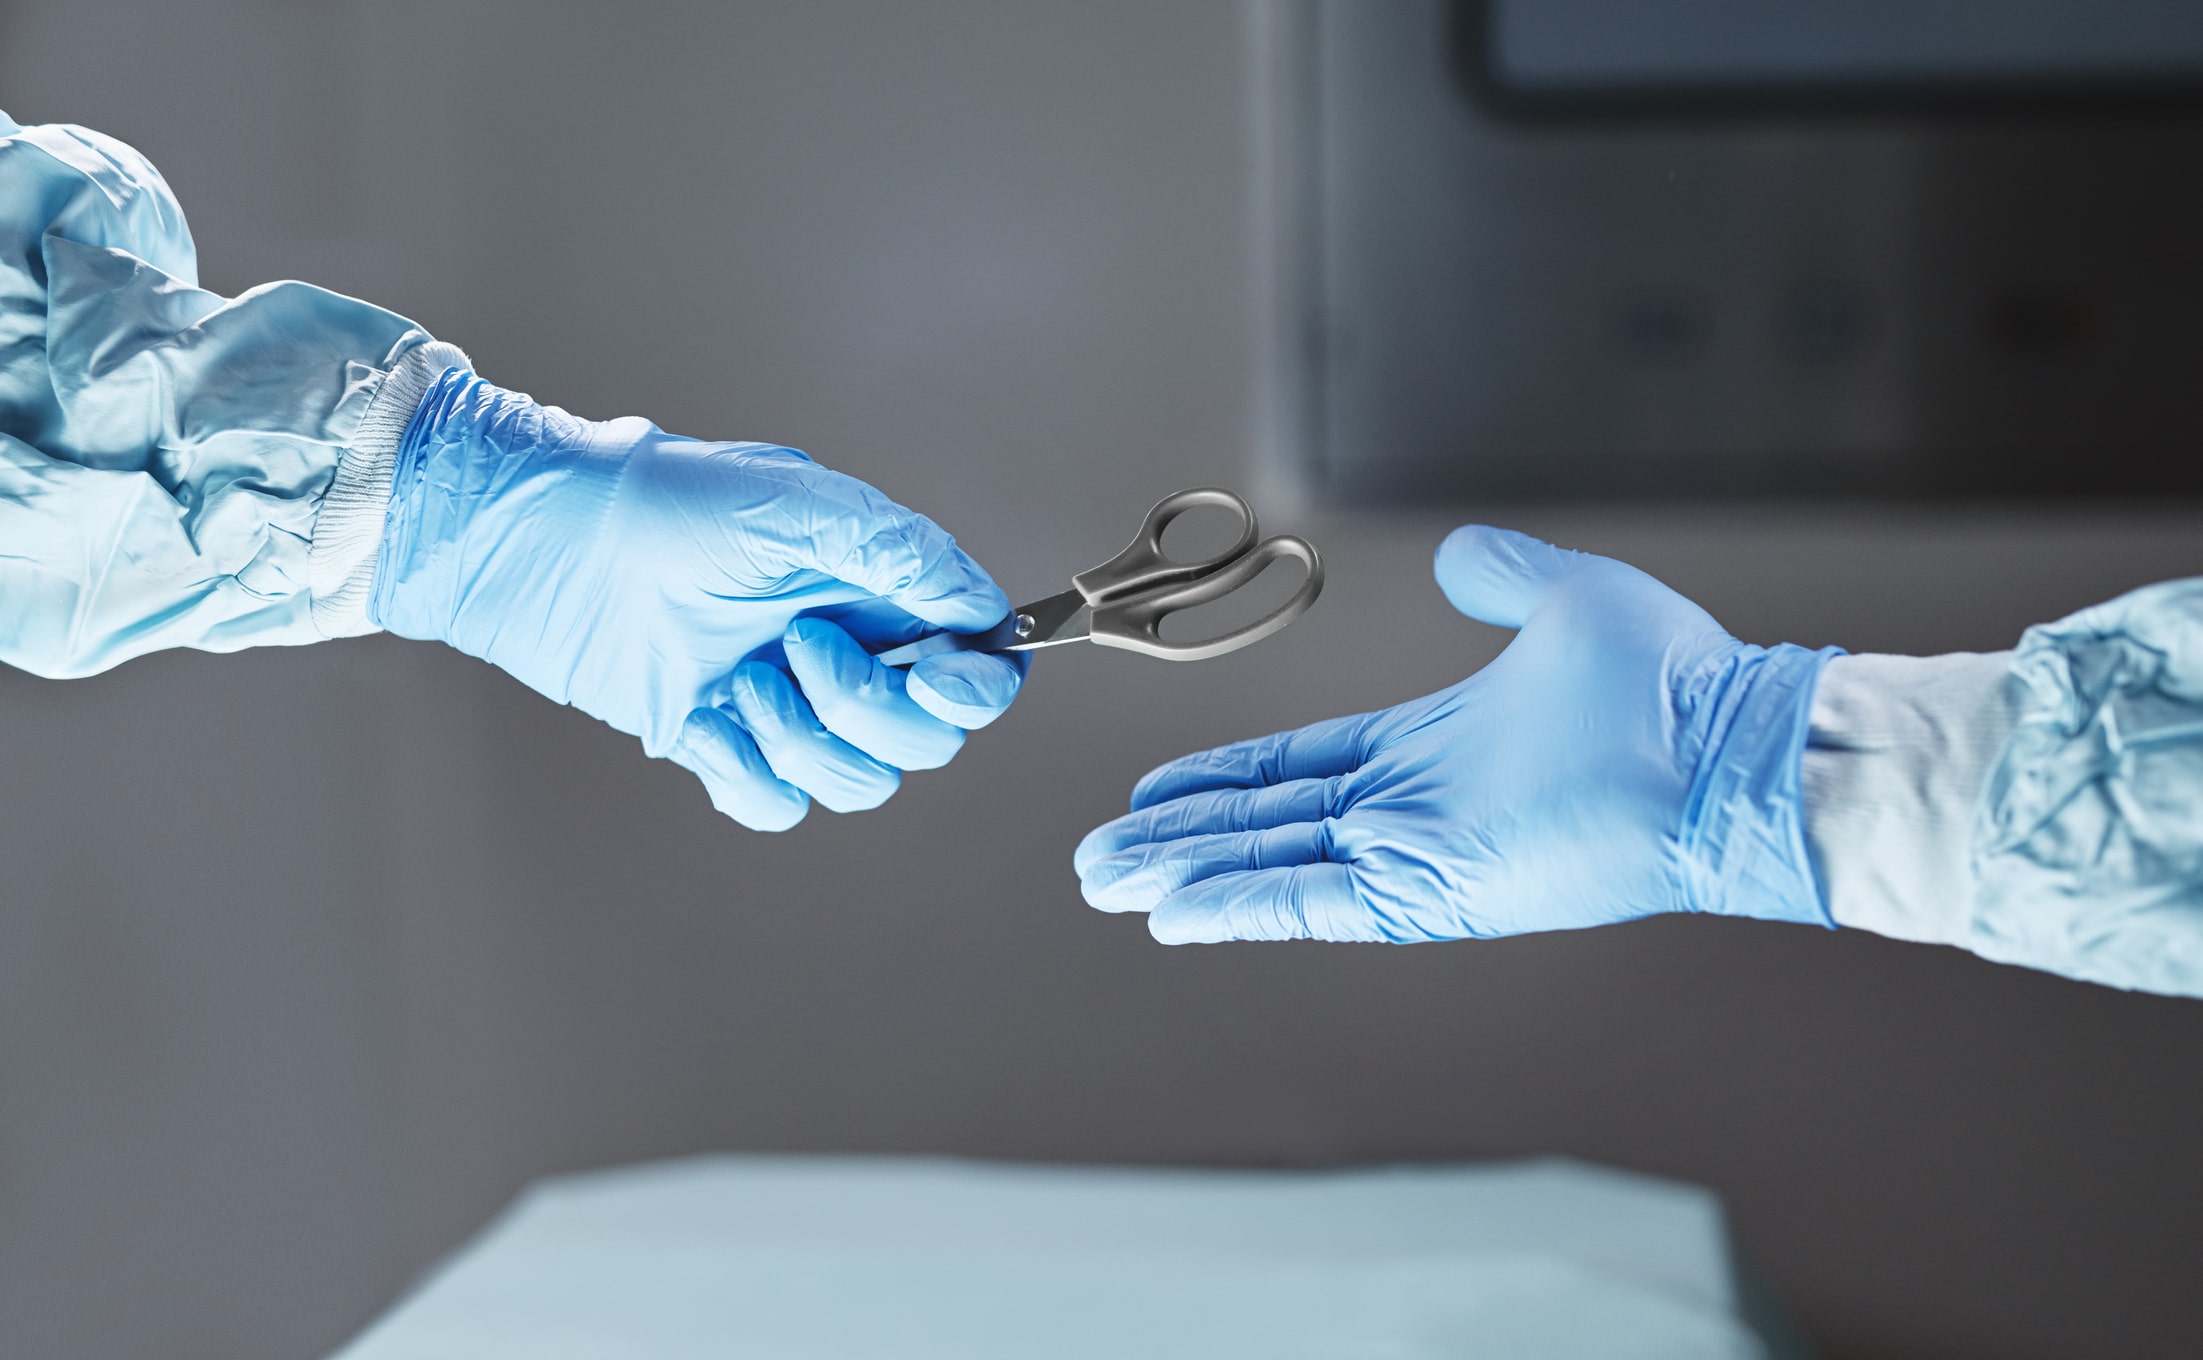 Sterile Vs Non Sterile Gloves